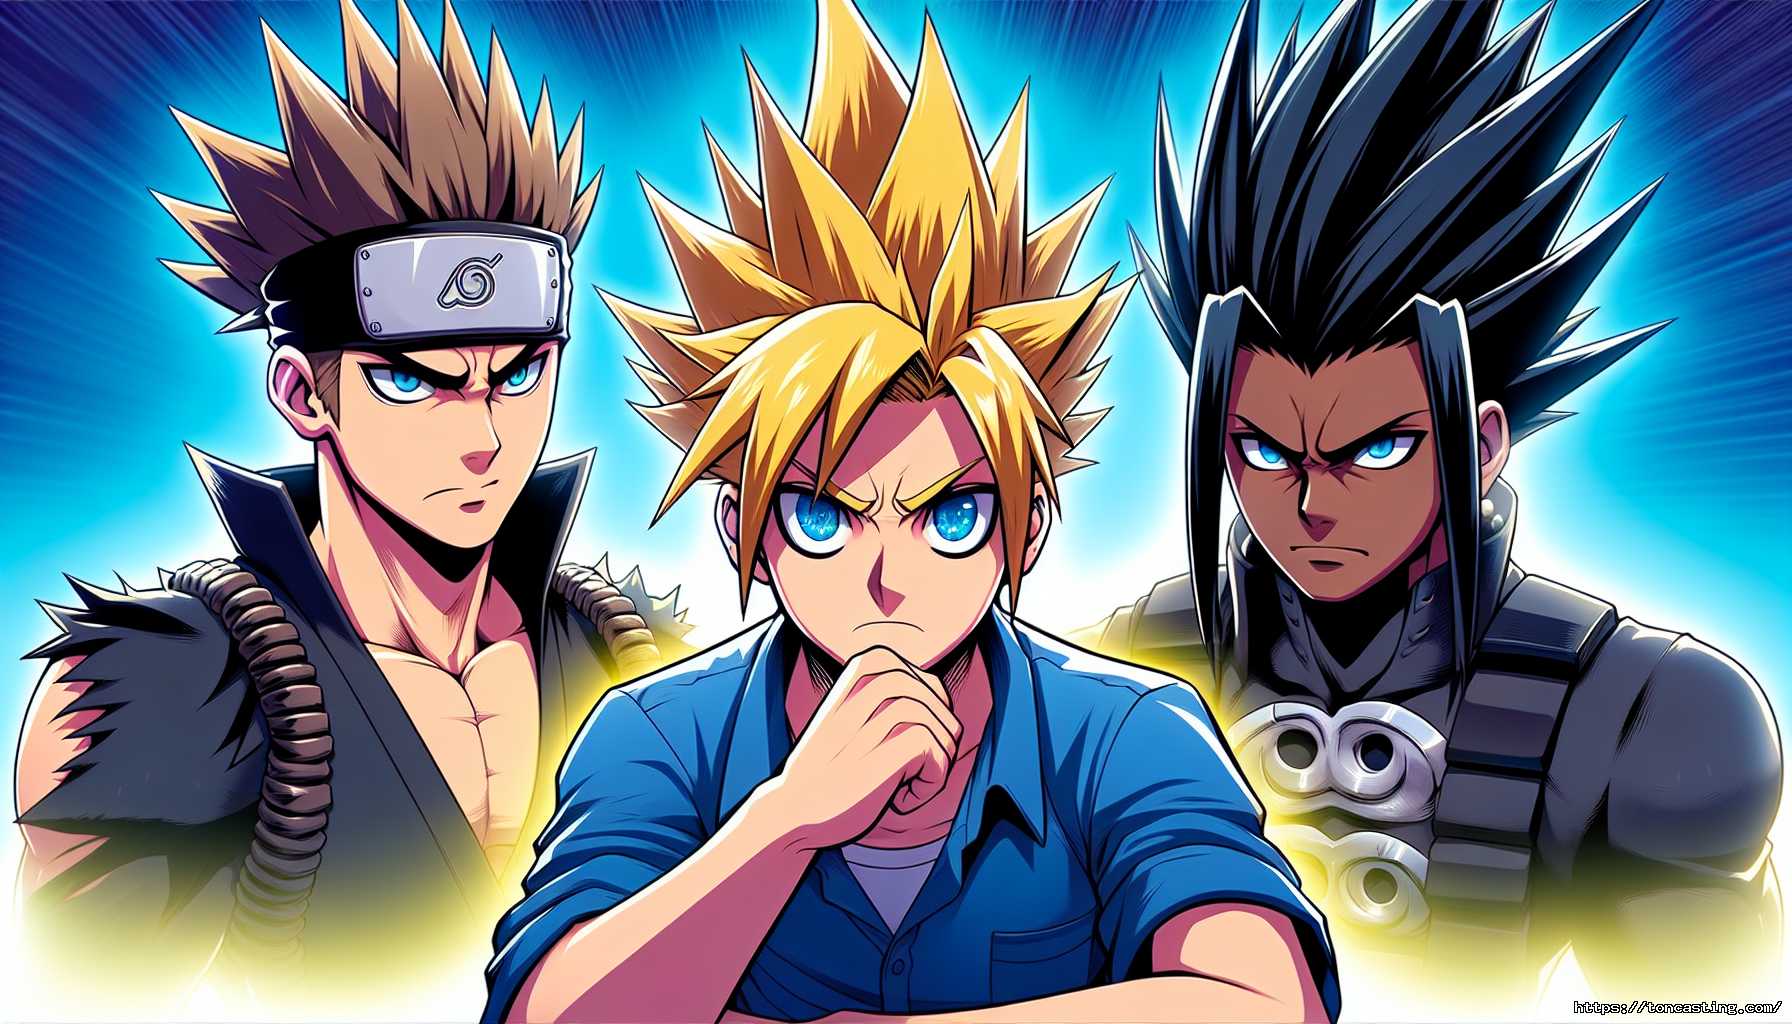 Trois personnages de style anime avec des coiffures et expressions différentes.